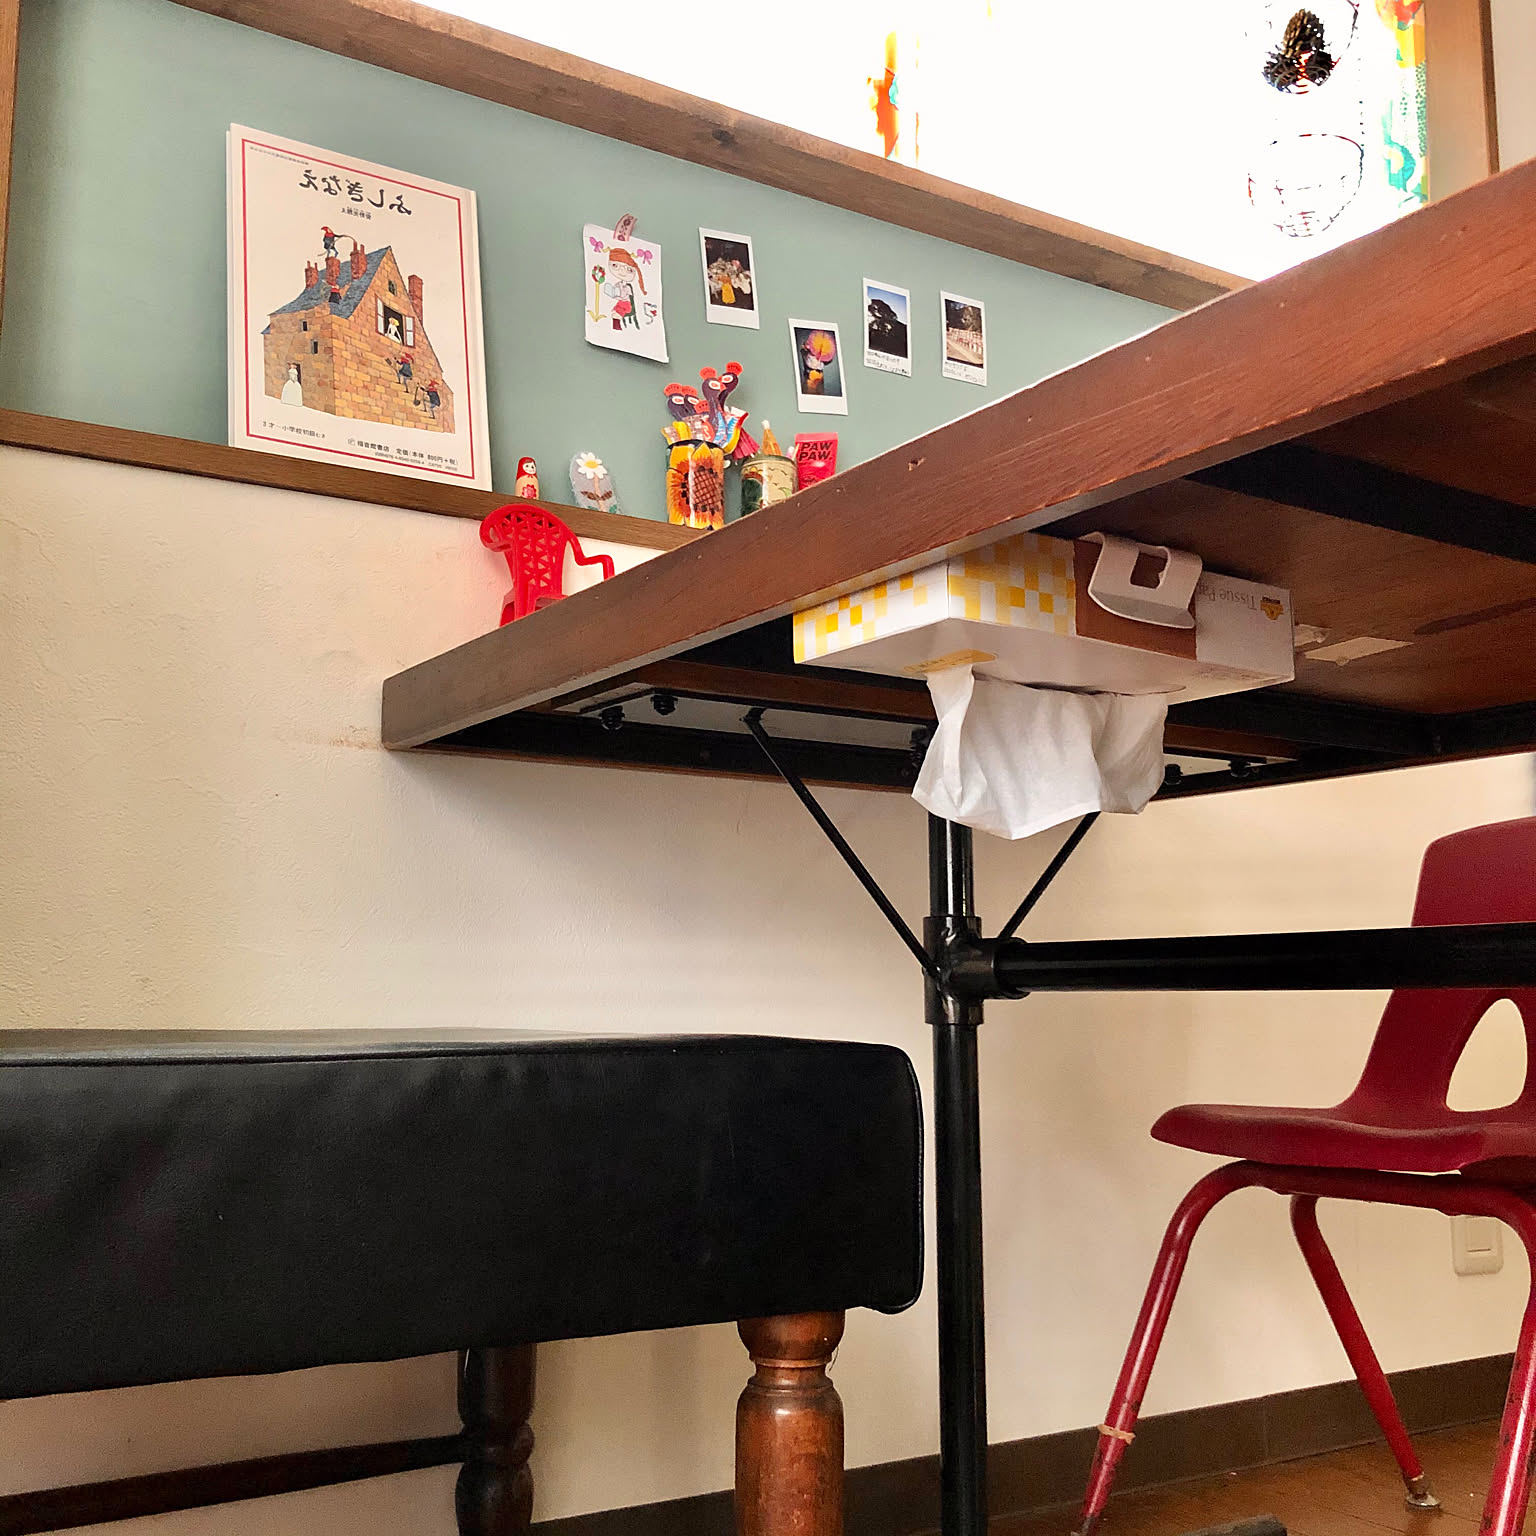 スッキリさせると使いやすい 食卓に物を置かないための工夫 Roomclip Mag 暮らしとインテリアのwebマガジン